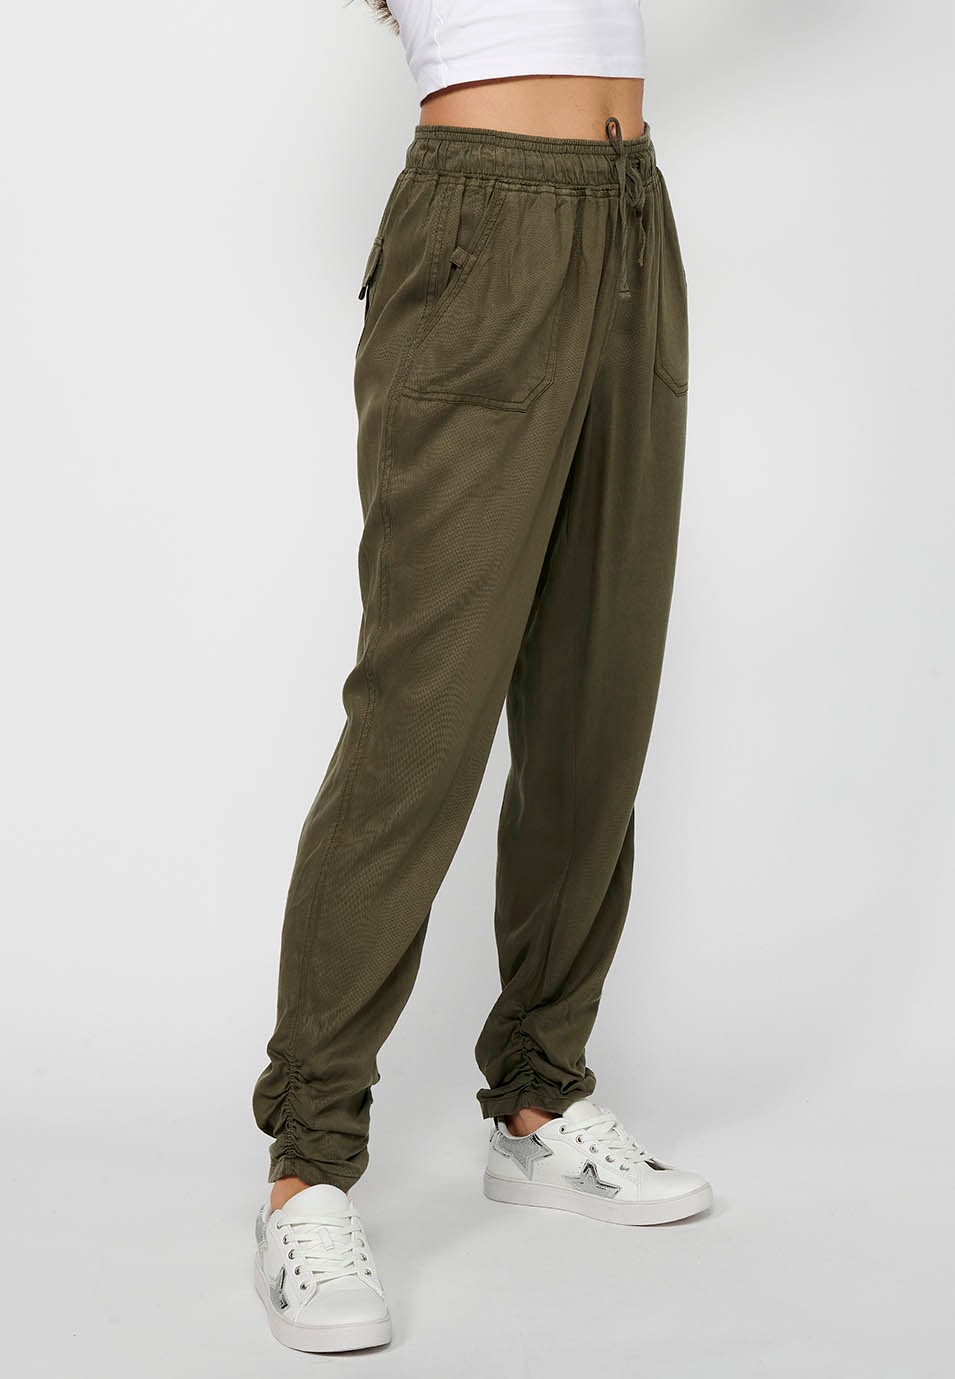 Pantalón largo jogger con Acabado rizado y Cintura engomada con Cuatro bolsillos, dos traseros con solapa de Color Kaki para Mujer 3